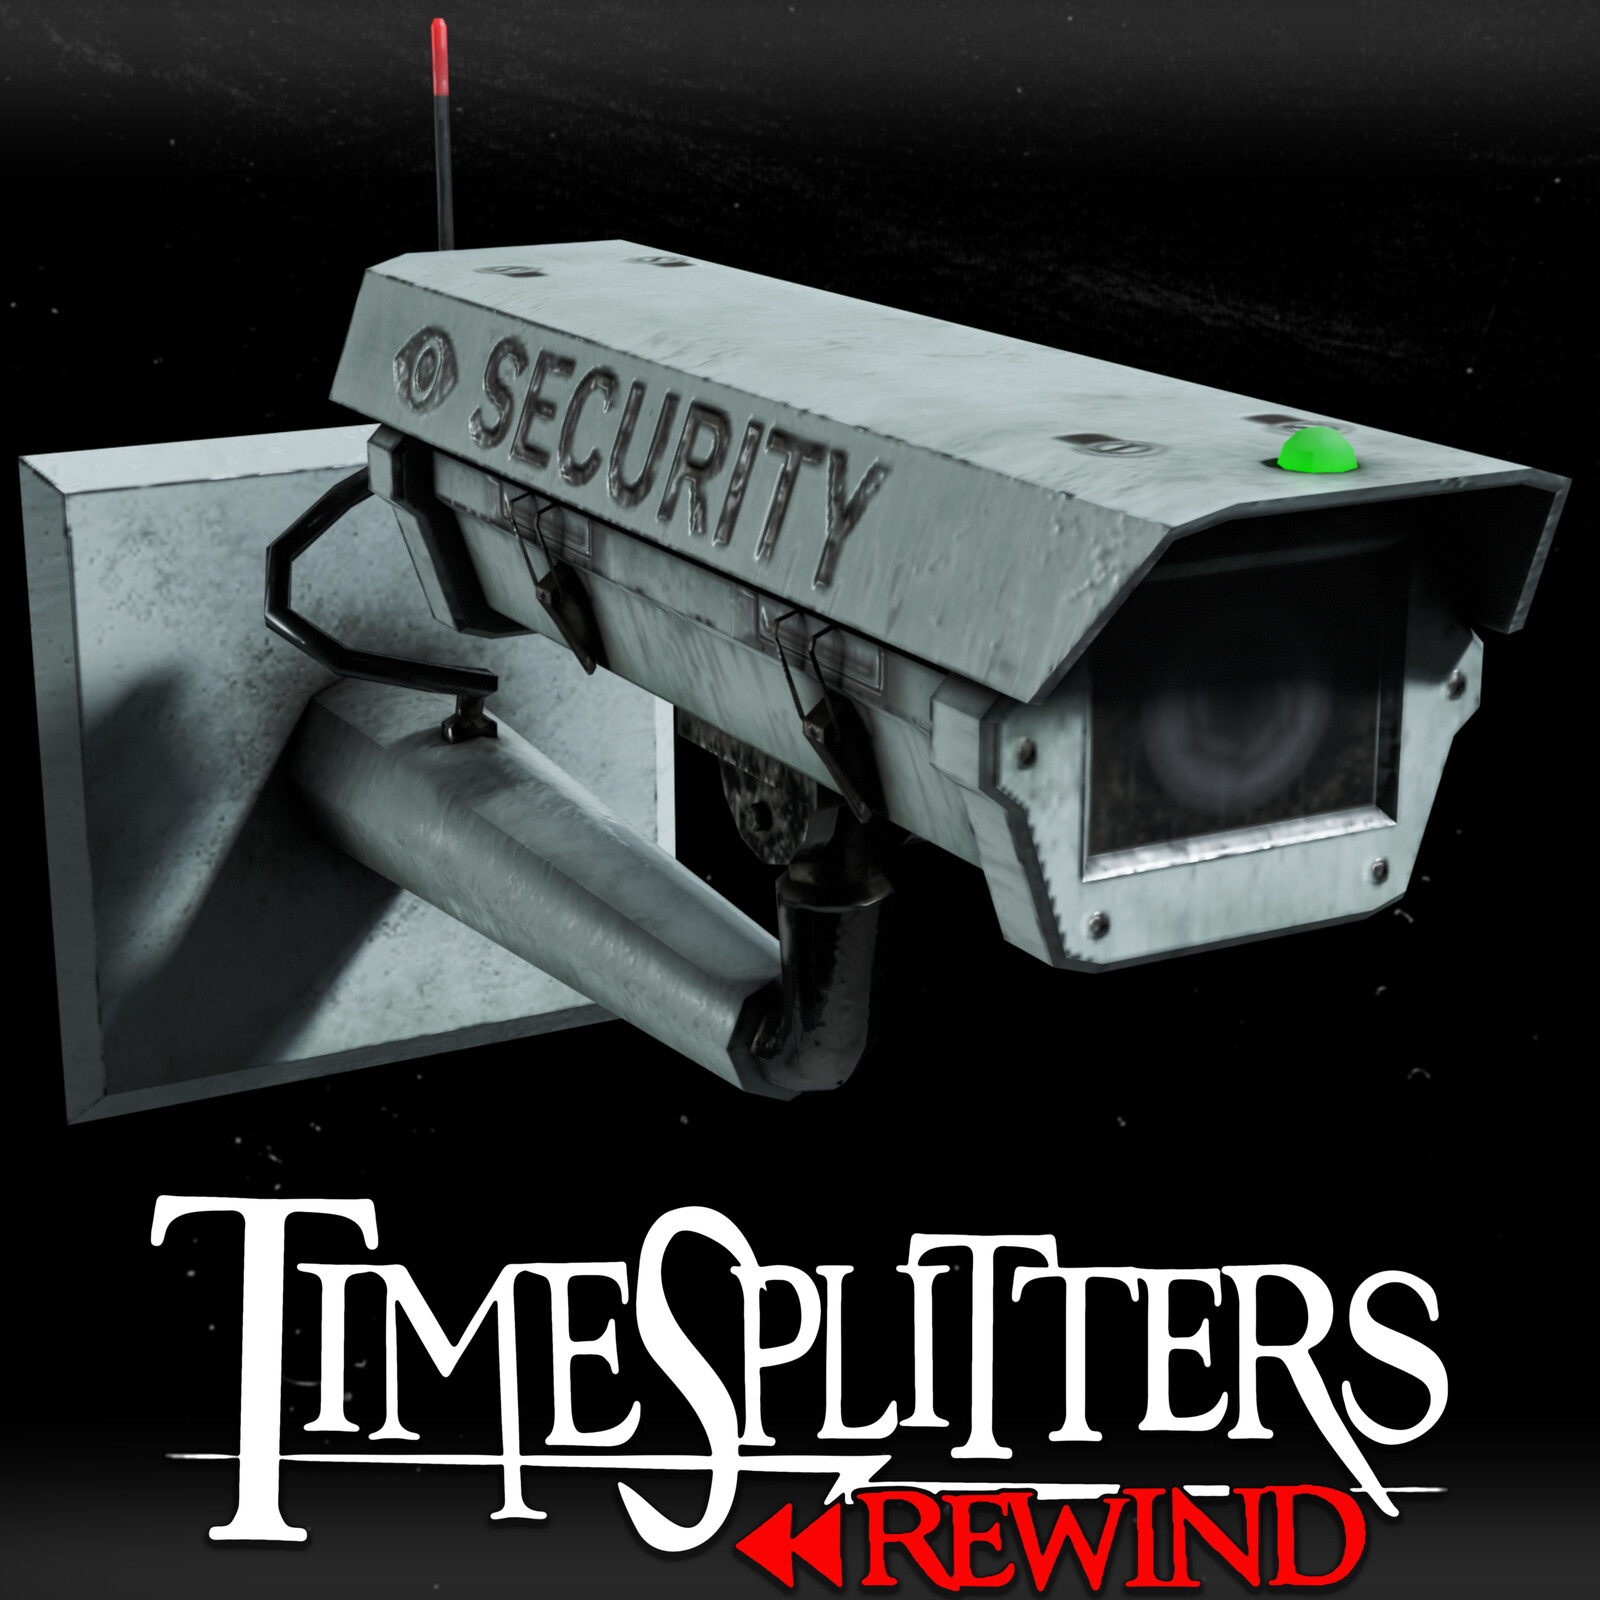 Security Camera - TimeSplitters Rewind